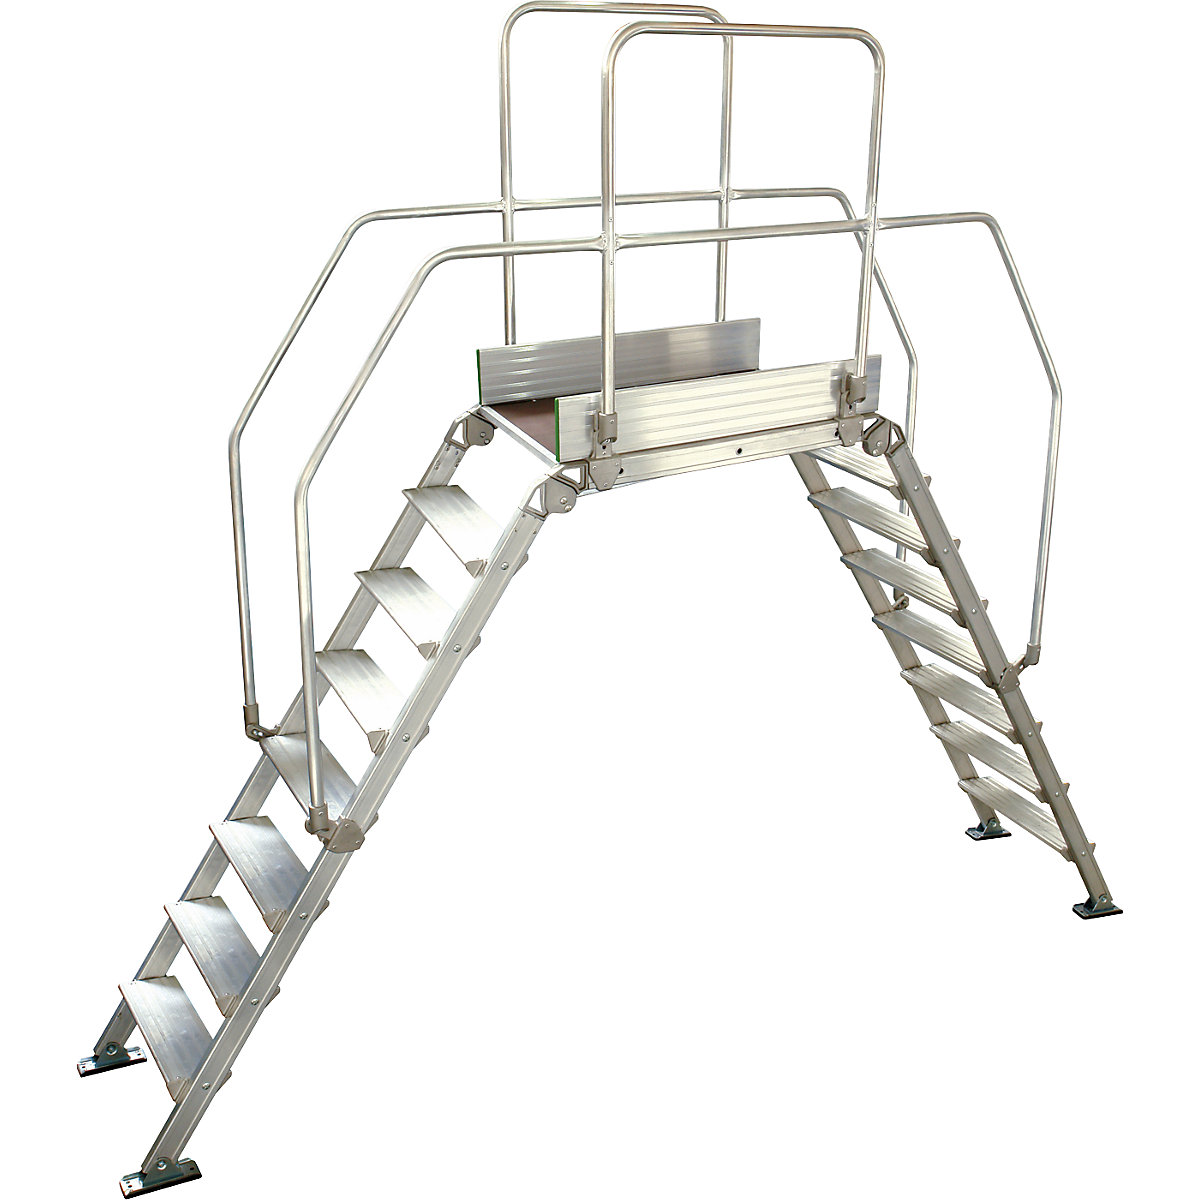 Aluminium ladderbrug, totale belasting 200 kg, 8 treden, platform 900 x 530 mm-16